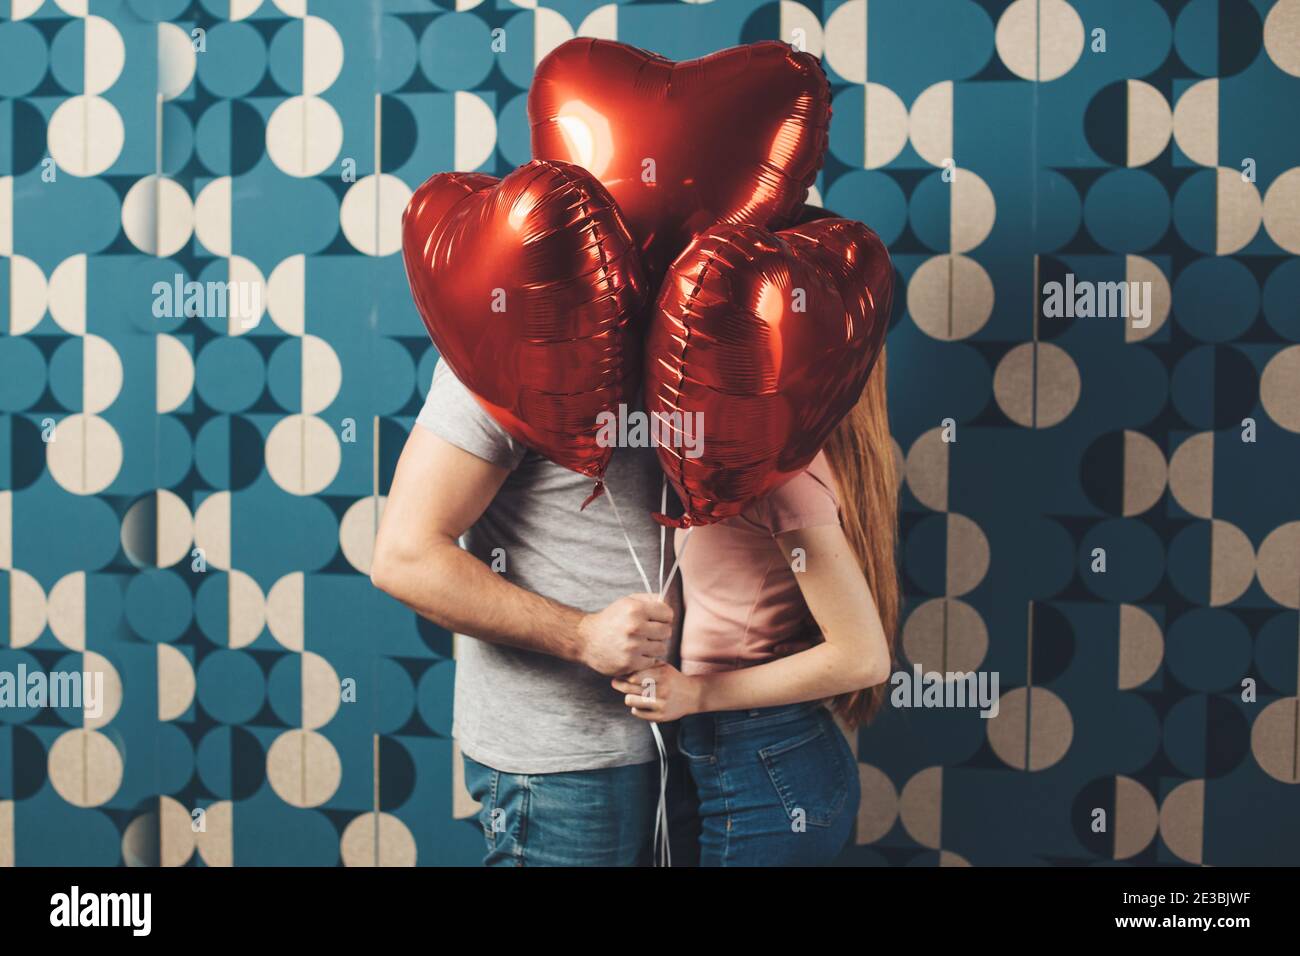 Coppia caucasica baciando dietro i palloncini su una parete blu festeggiando il giorno delle valentine Foto Stock